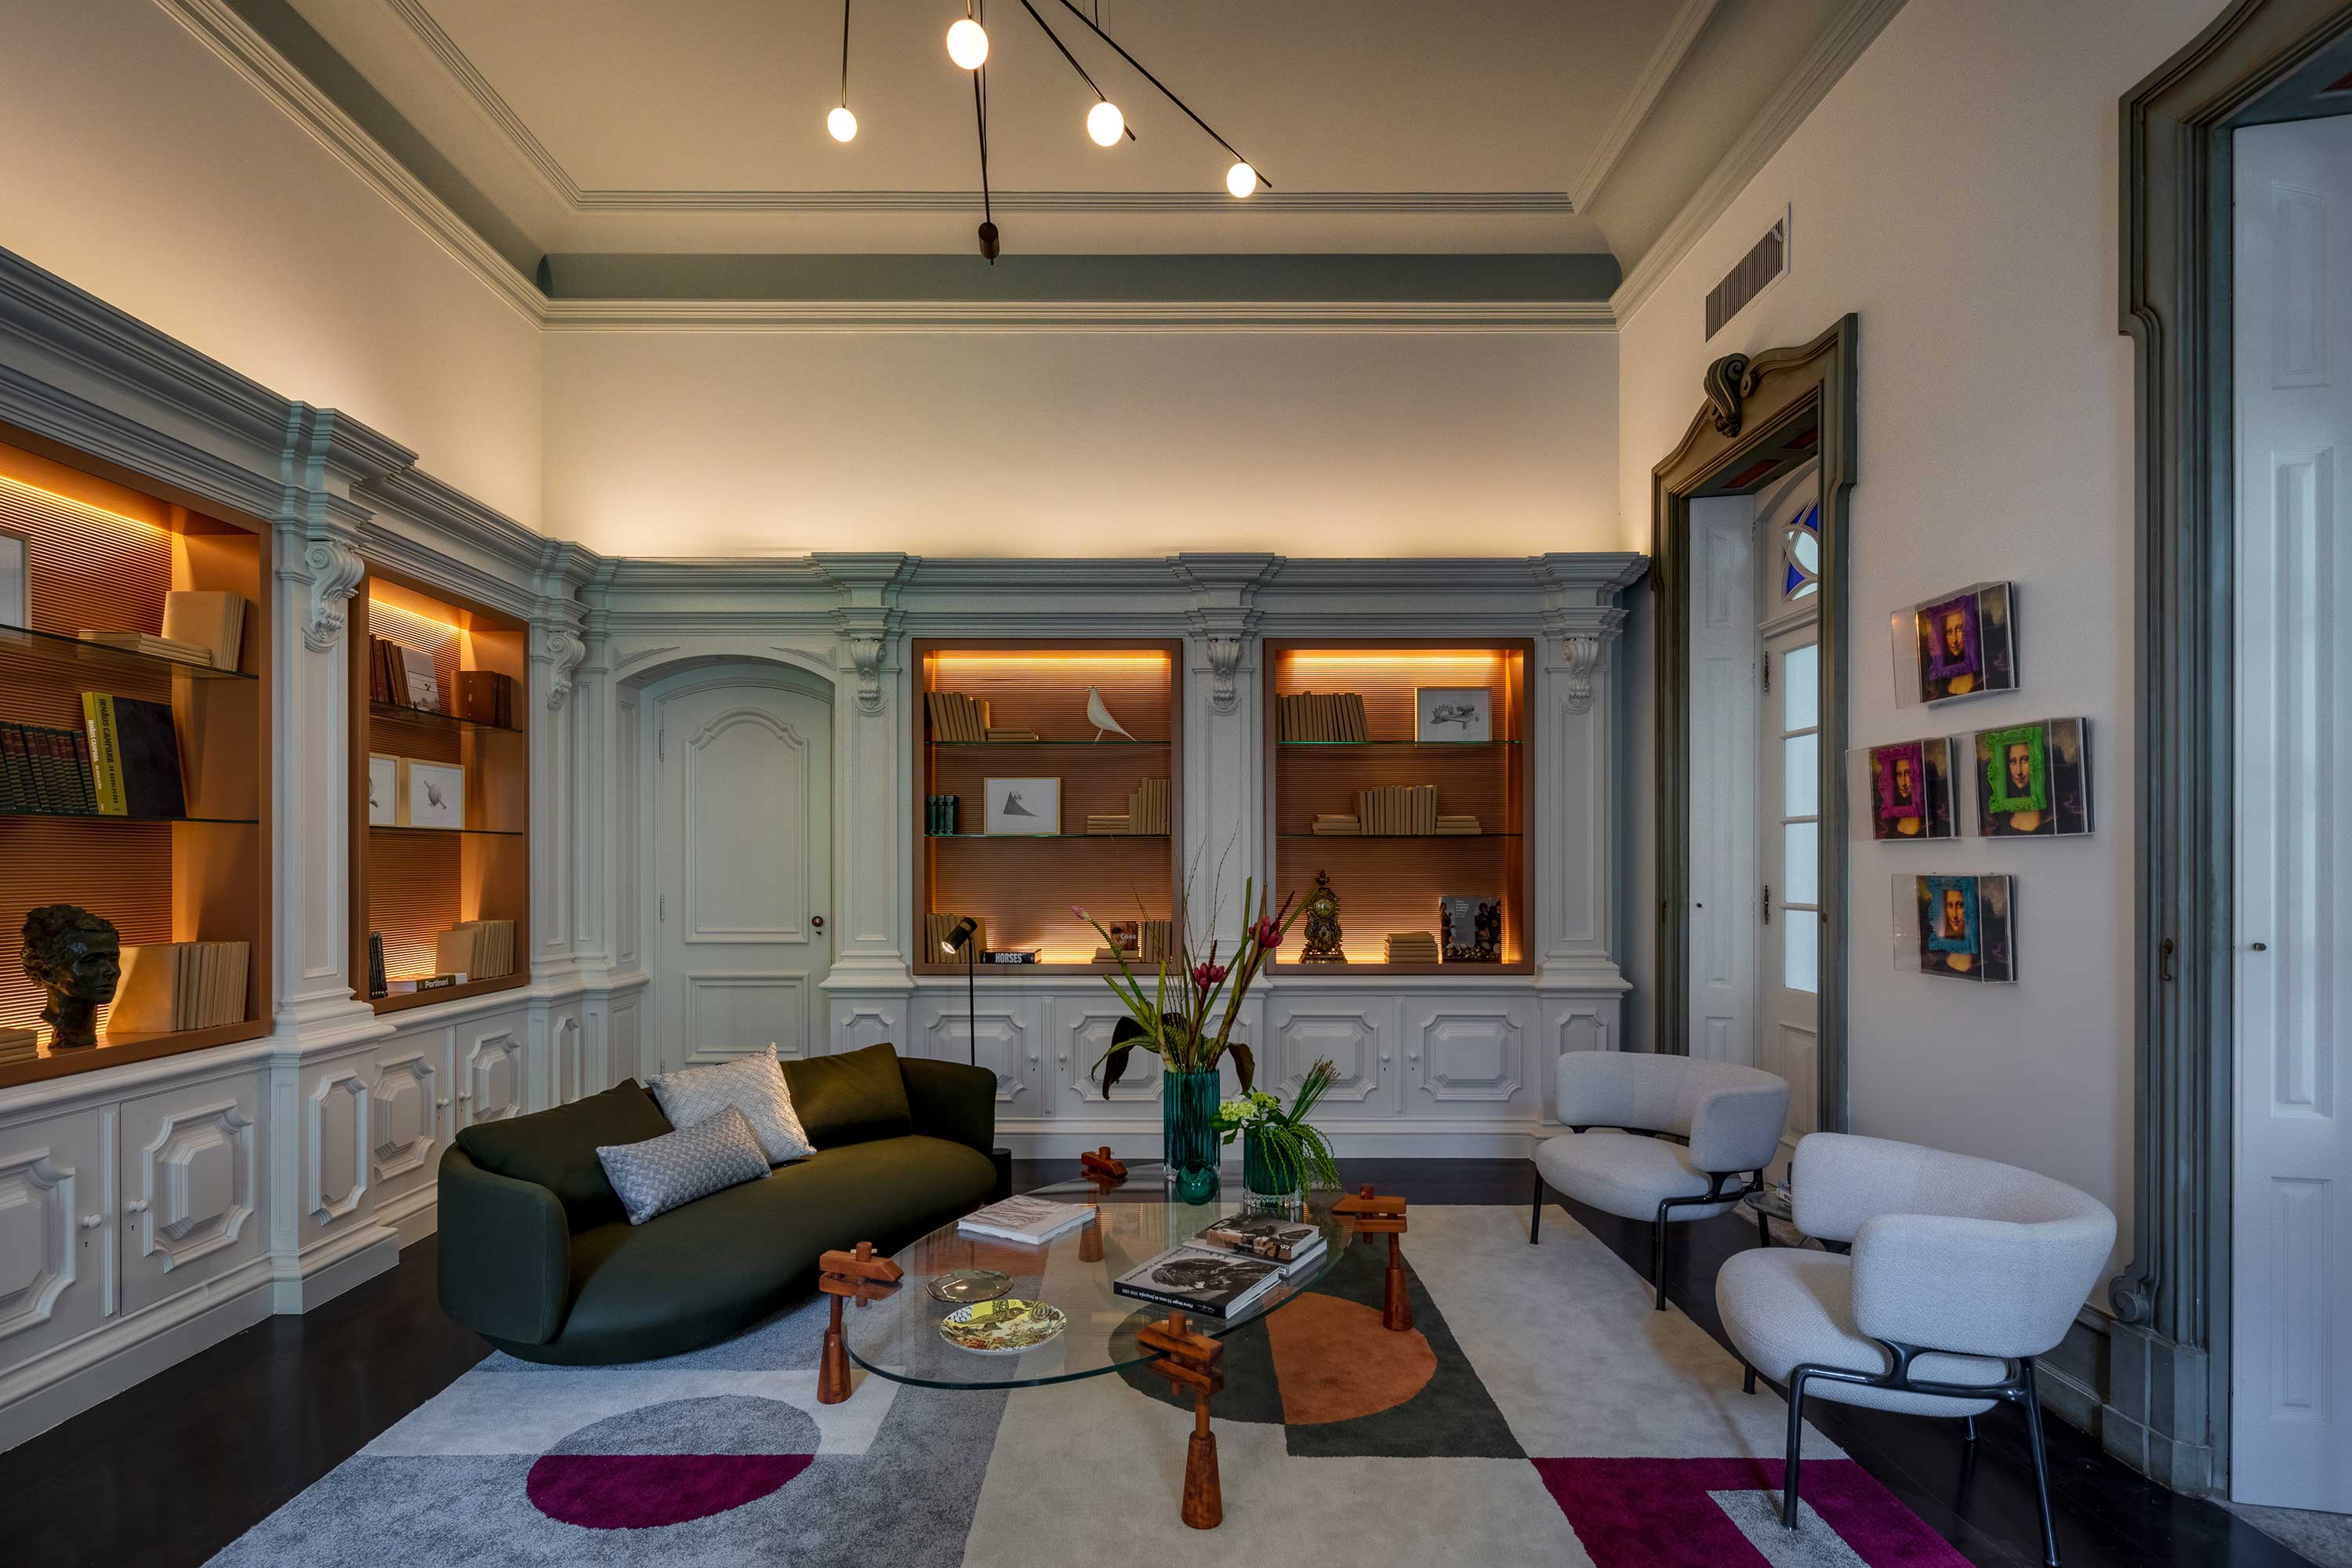 Na Biblioteca, Andréa Chicharo tirou partido da arquitetura original do século XIX e a modernizou com o mobiliário contemporâneo, que privilegiou designers brasileiros. Em destaque, o sofá baixo de Guilherme Wentz.